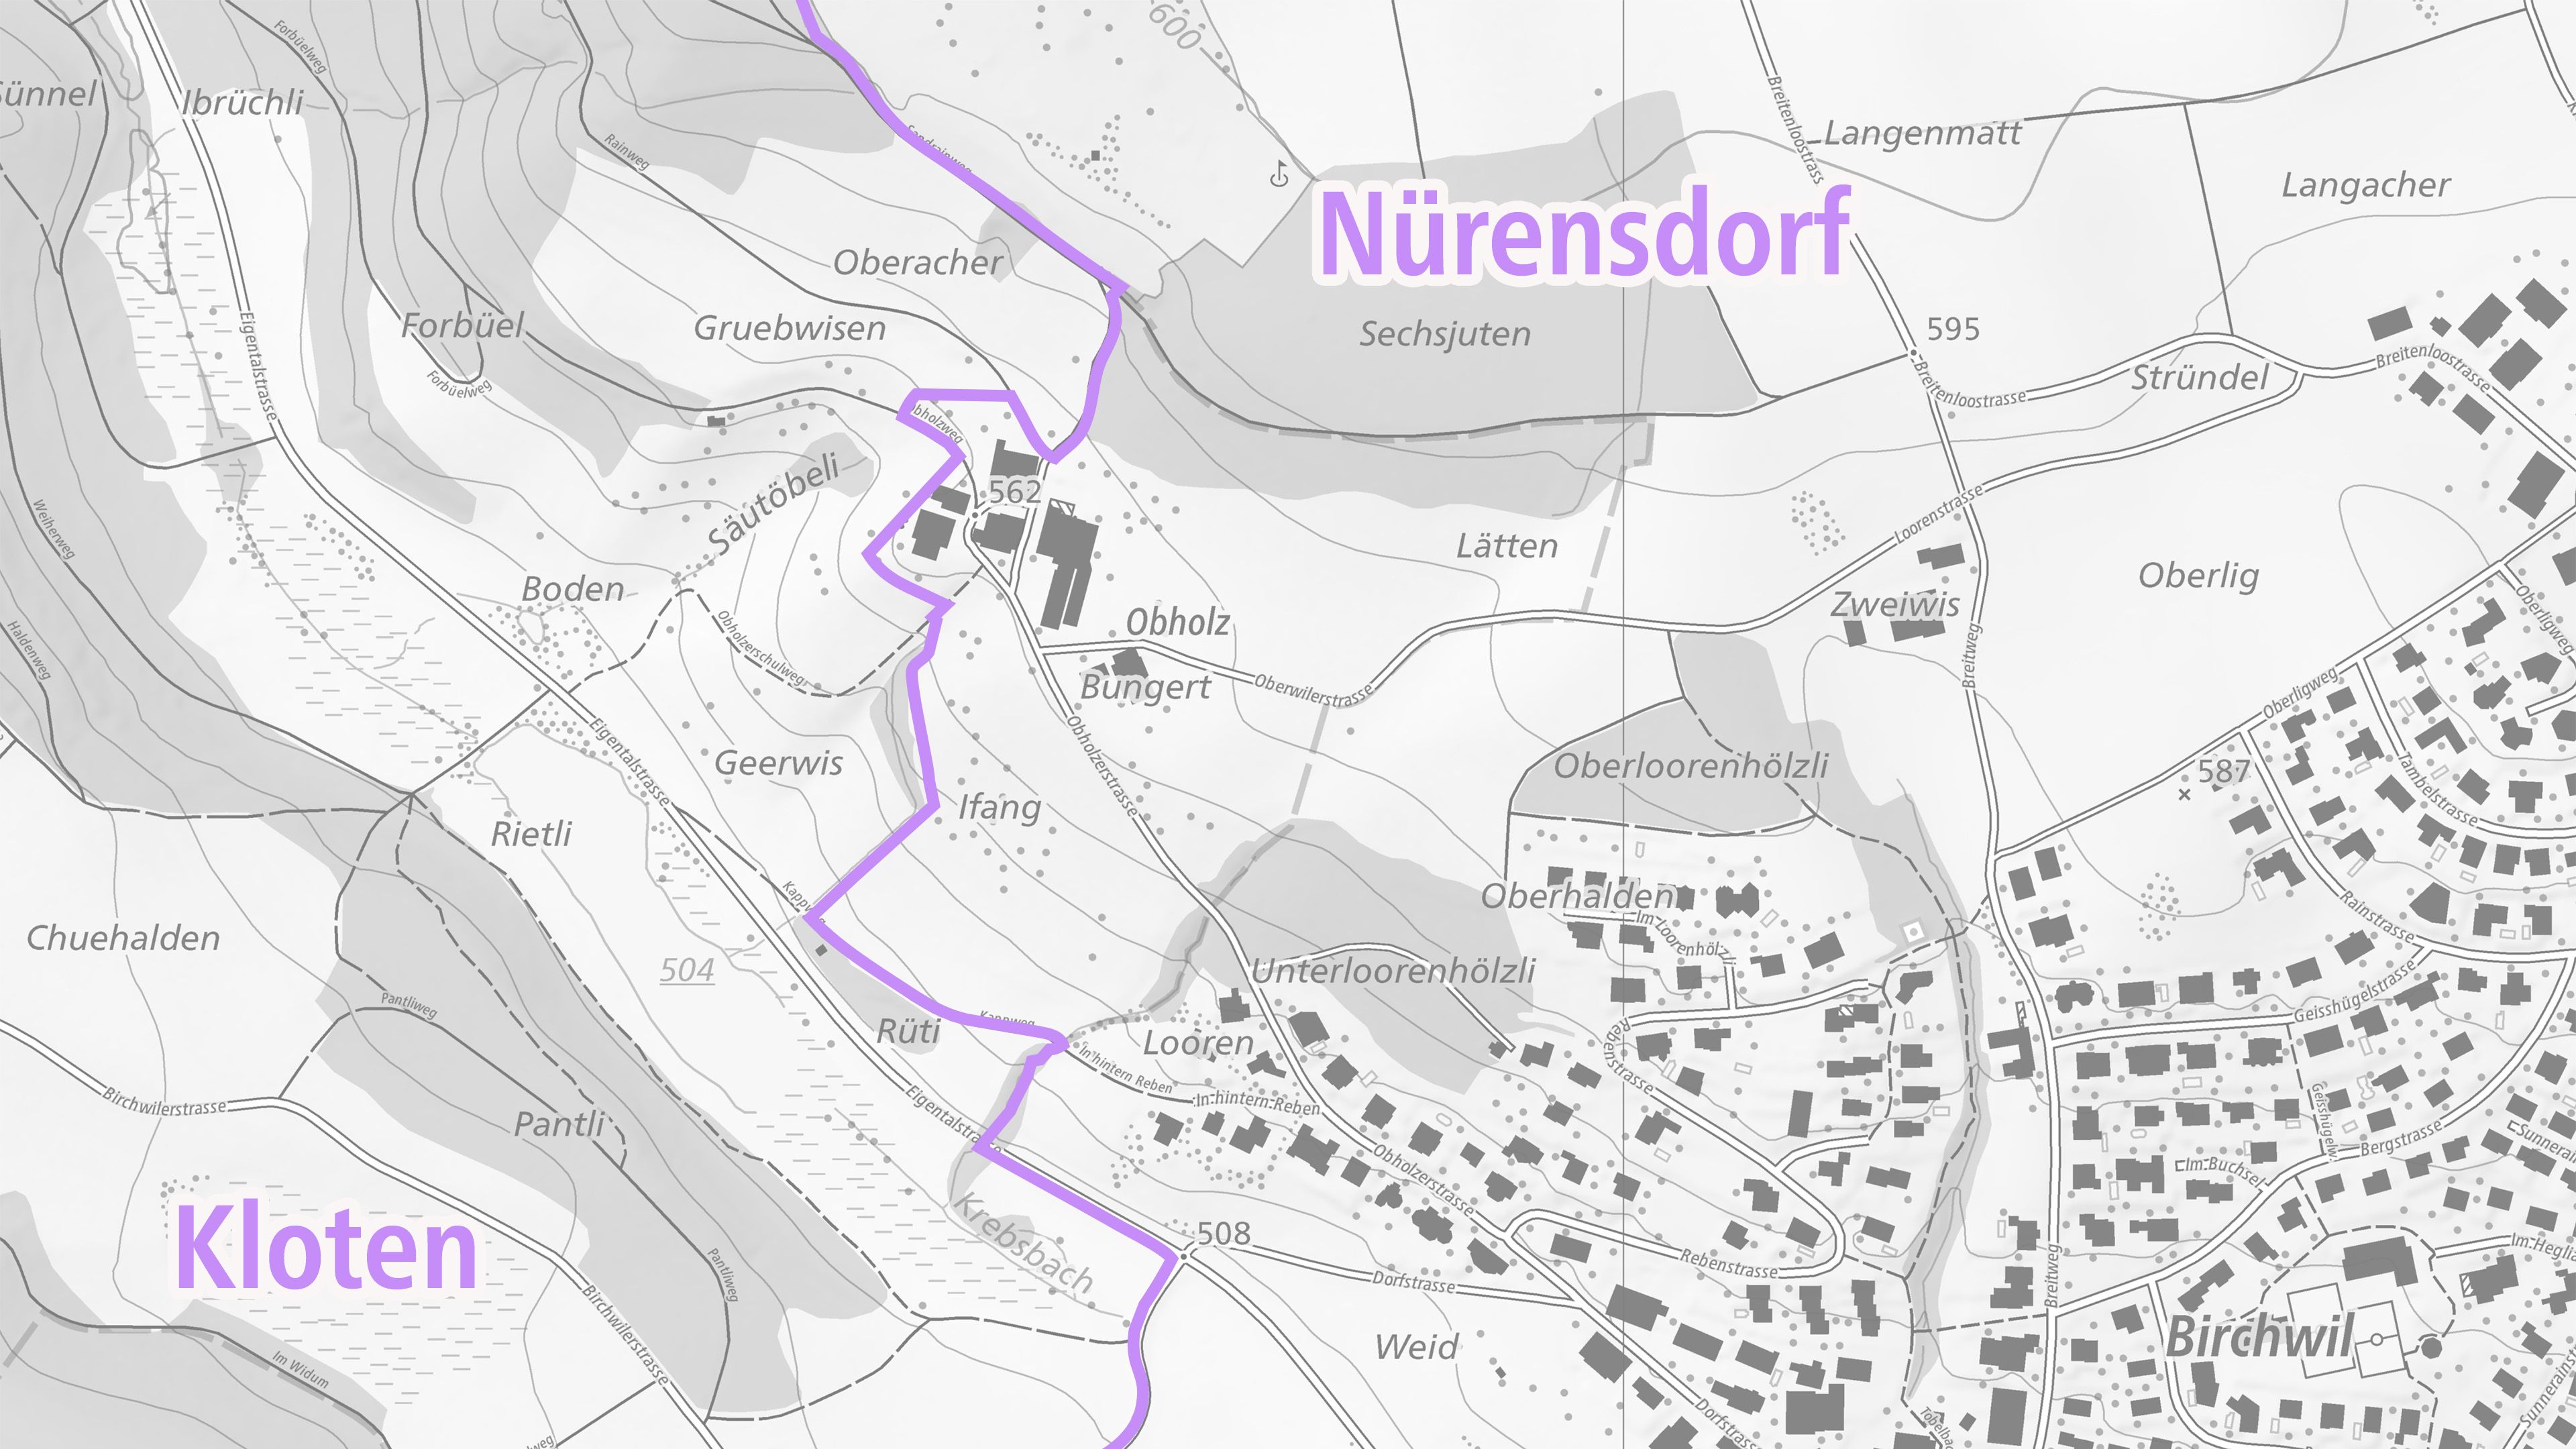 L'immagine mostra il nuovo confine tra i comuni di Kloten e Nürensdorf su una mappa nazionale grigia di swisstopo.